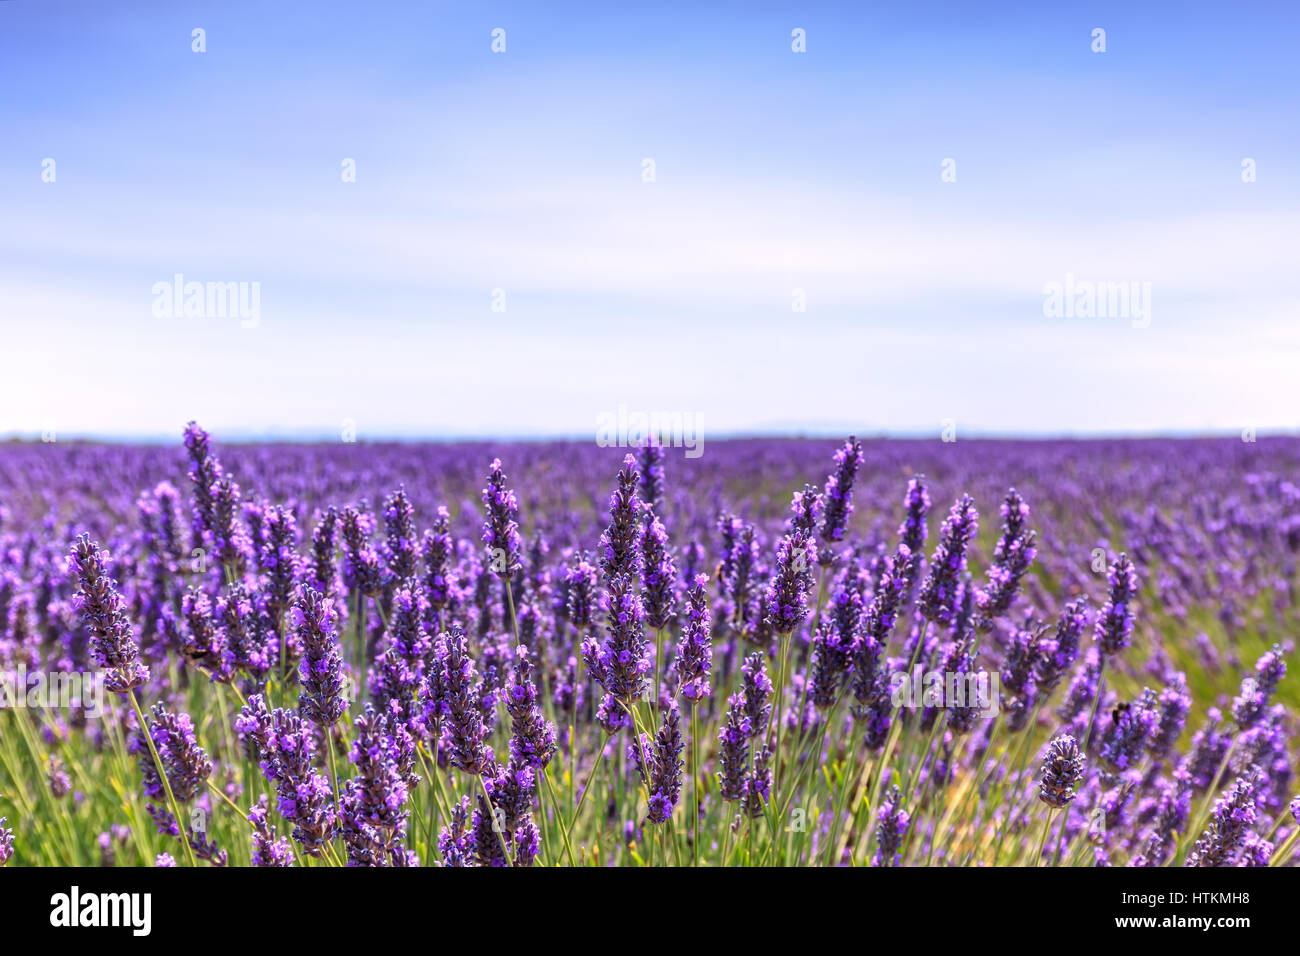 Blume, Lavendel duftenden Felder in endlosen Reihen und eine blaue Wolke Himmel. Landschaft in der Hochebene von Valensole, Provence, Frankreich. Stockfoto